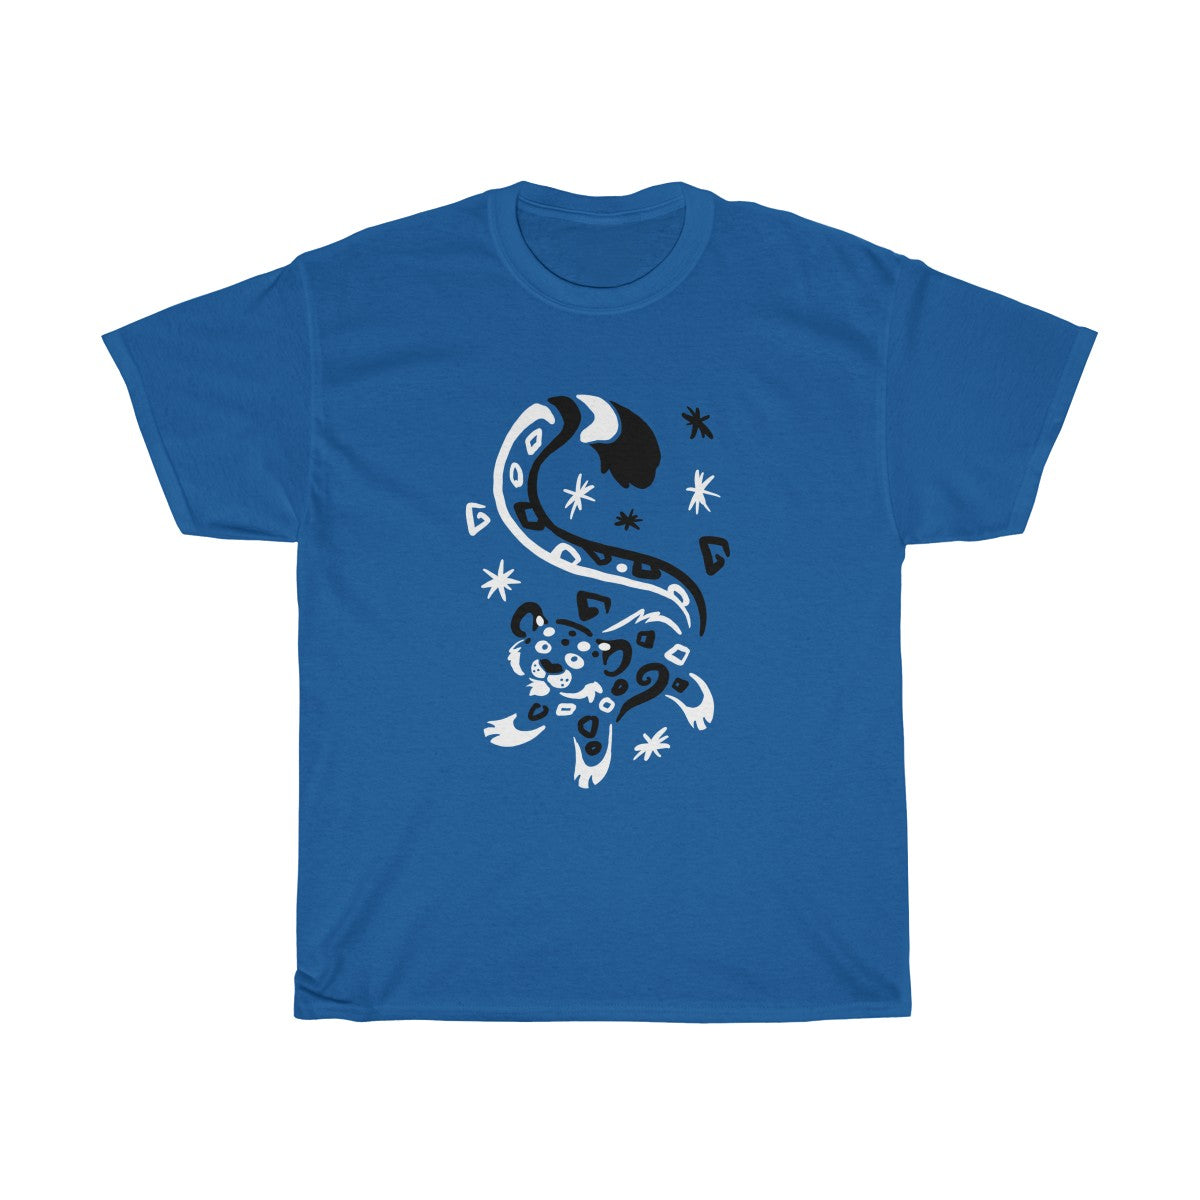 Sneps & Snow - T-Shirt T-Shirt Dire Creatures Royal Blue S 